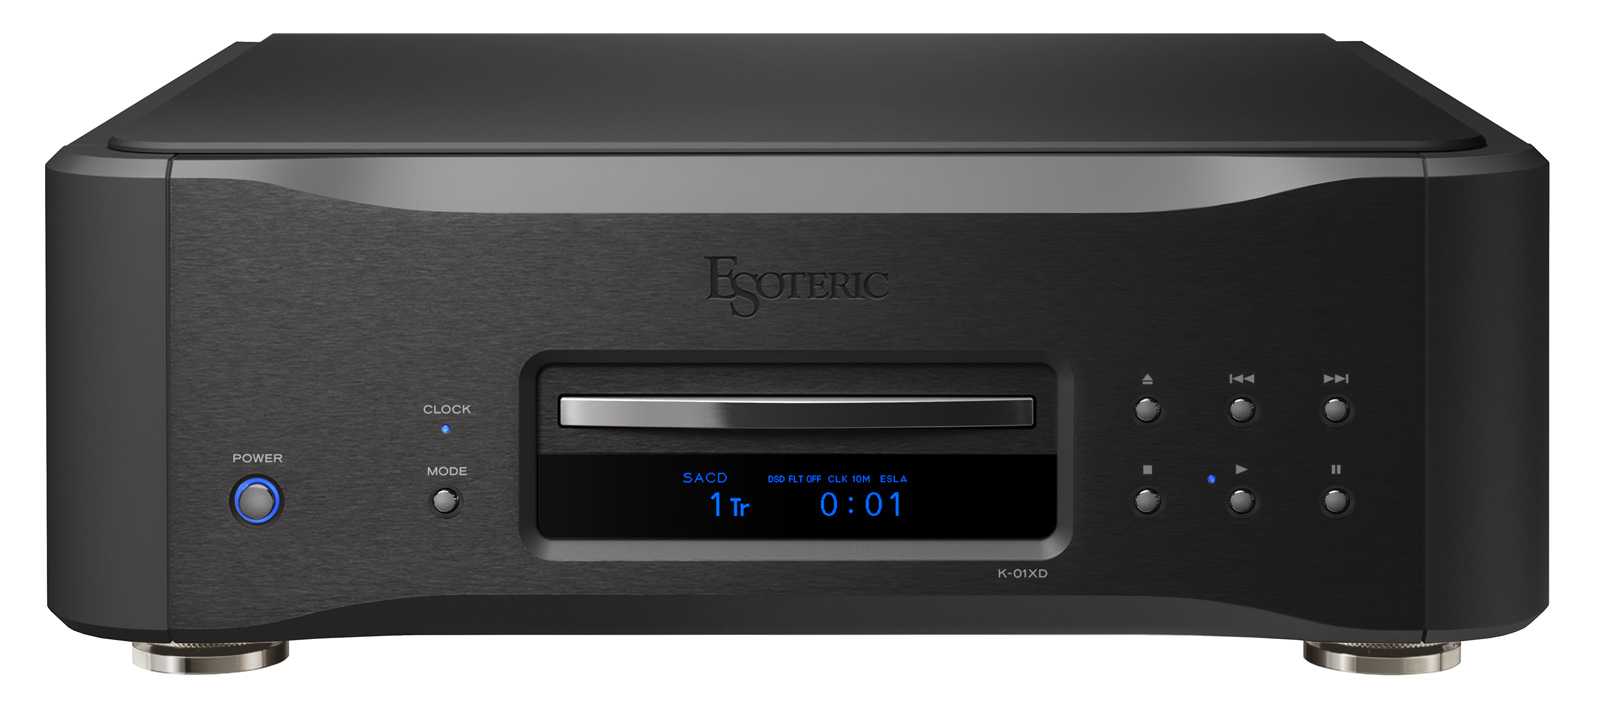 Super audio cd плееры esoteric k-05 и esoteric k-07 доступны в новом цвете